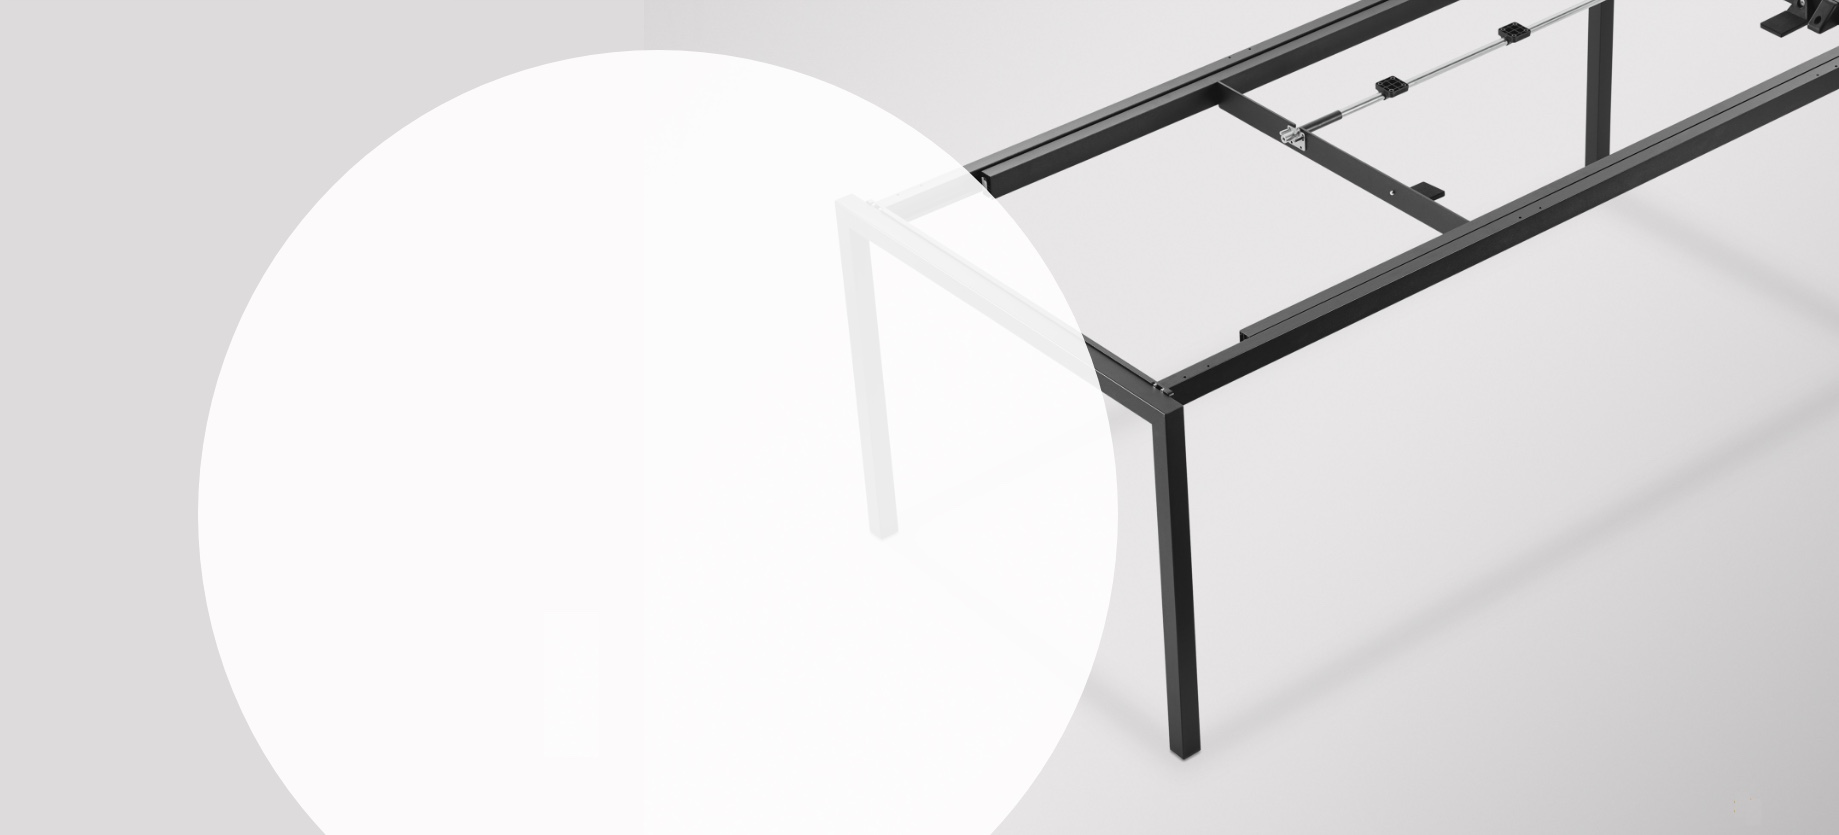 Tischgestelle mit und ohne Funktion online konfigurieren - Pöttker 3D Tischgestellkonfigurator